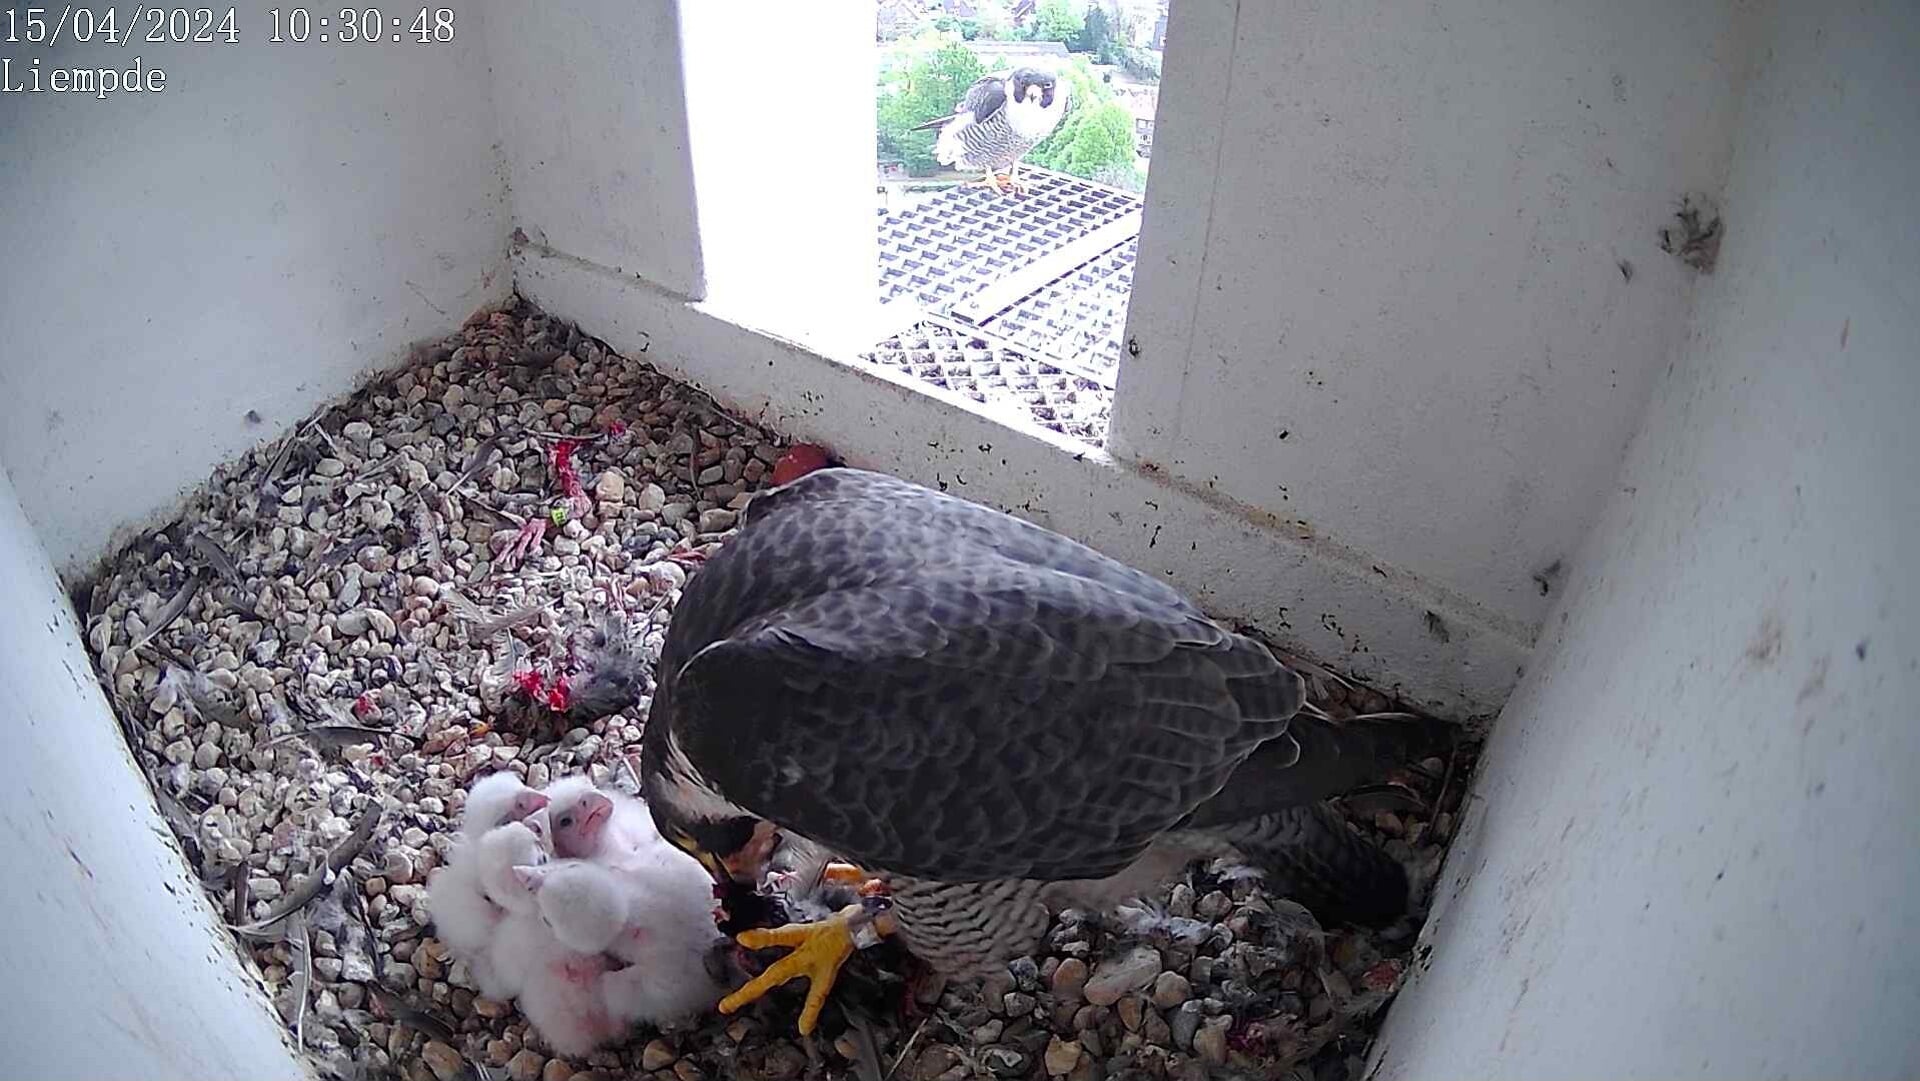 Het vrouwtje voert haar jongen terwijl het mannetje, dat de prooi gebracht heeft, buiten de nestkast zit en toekijkt.